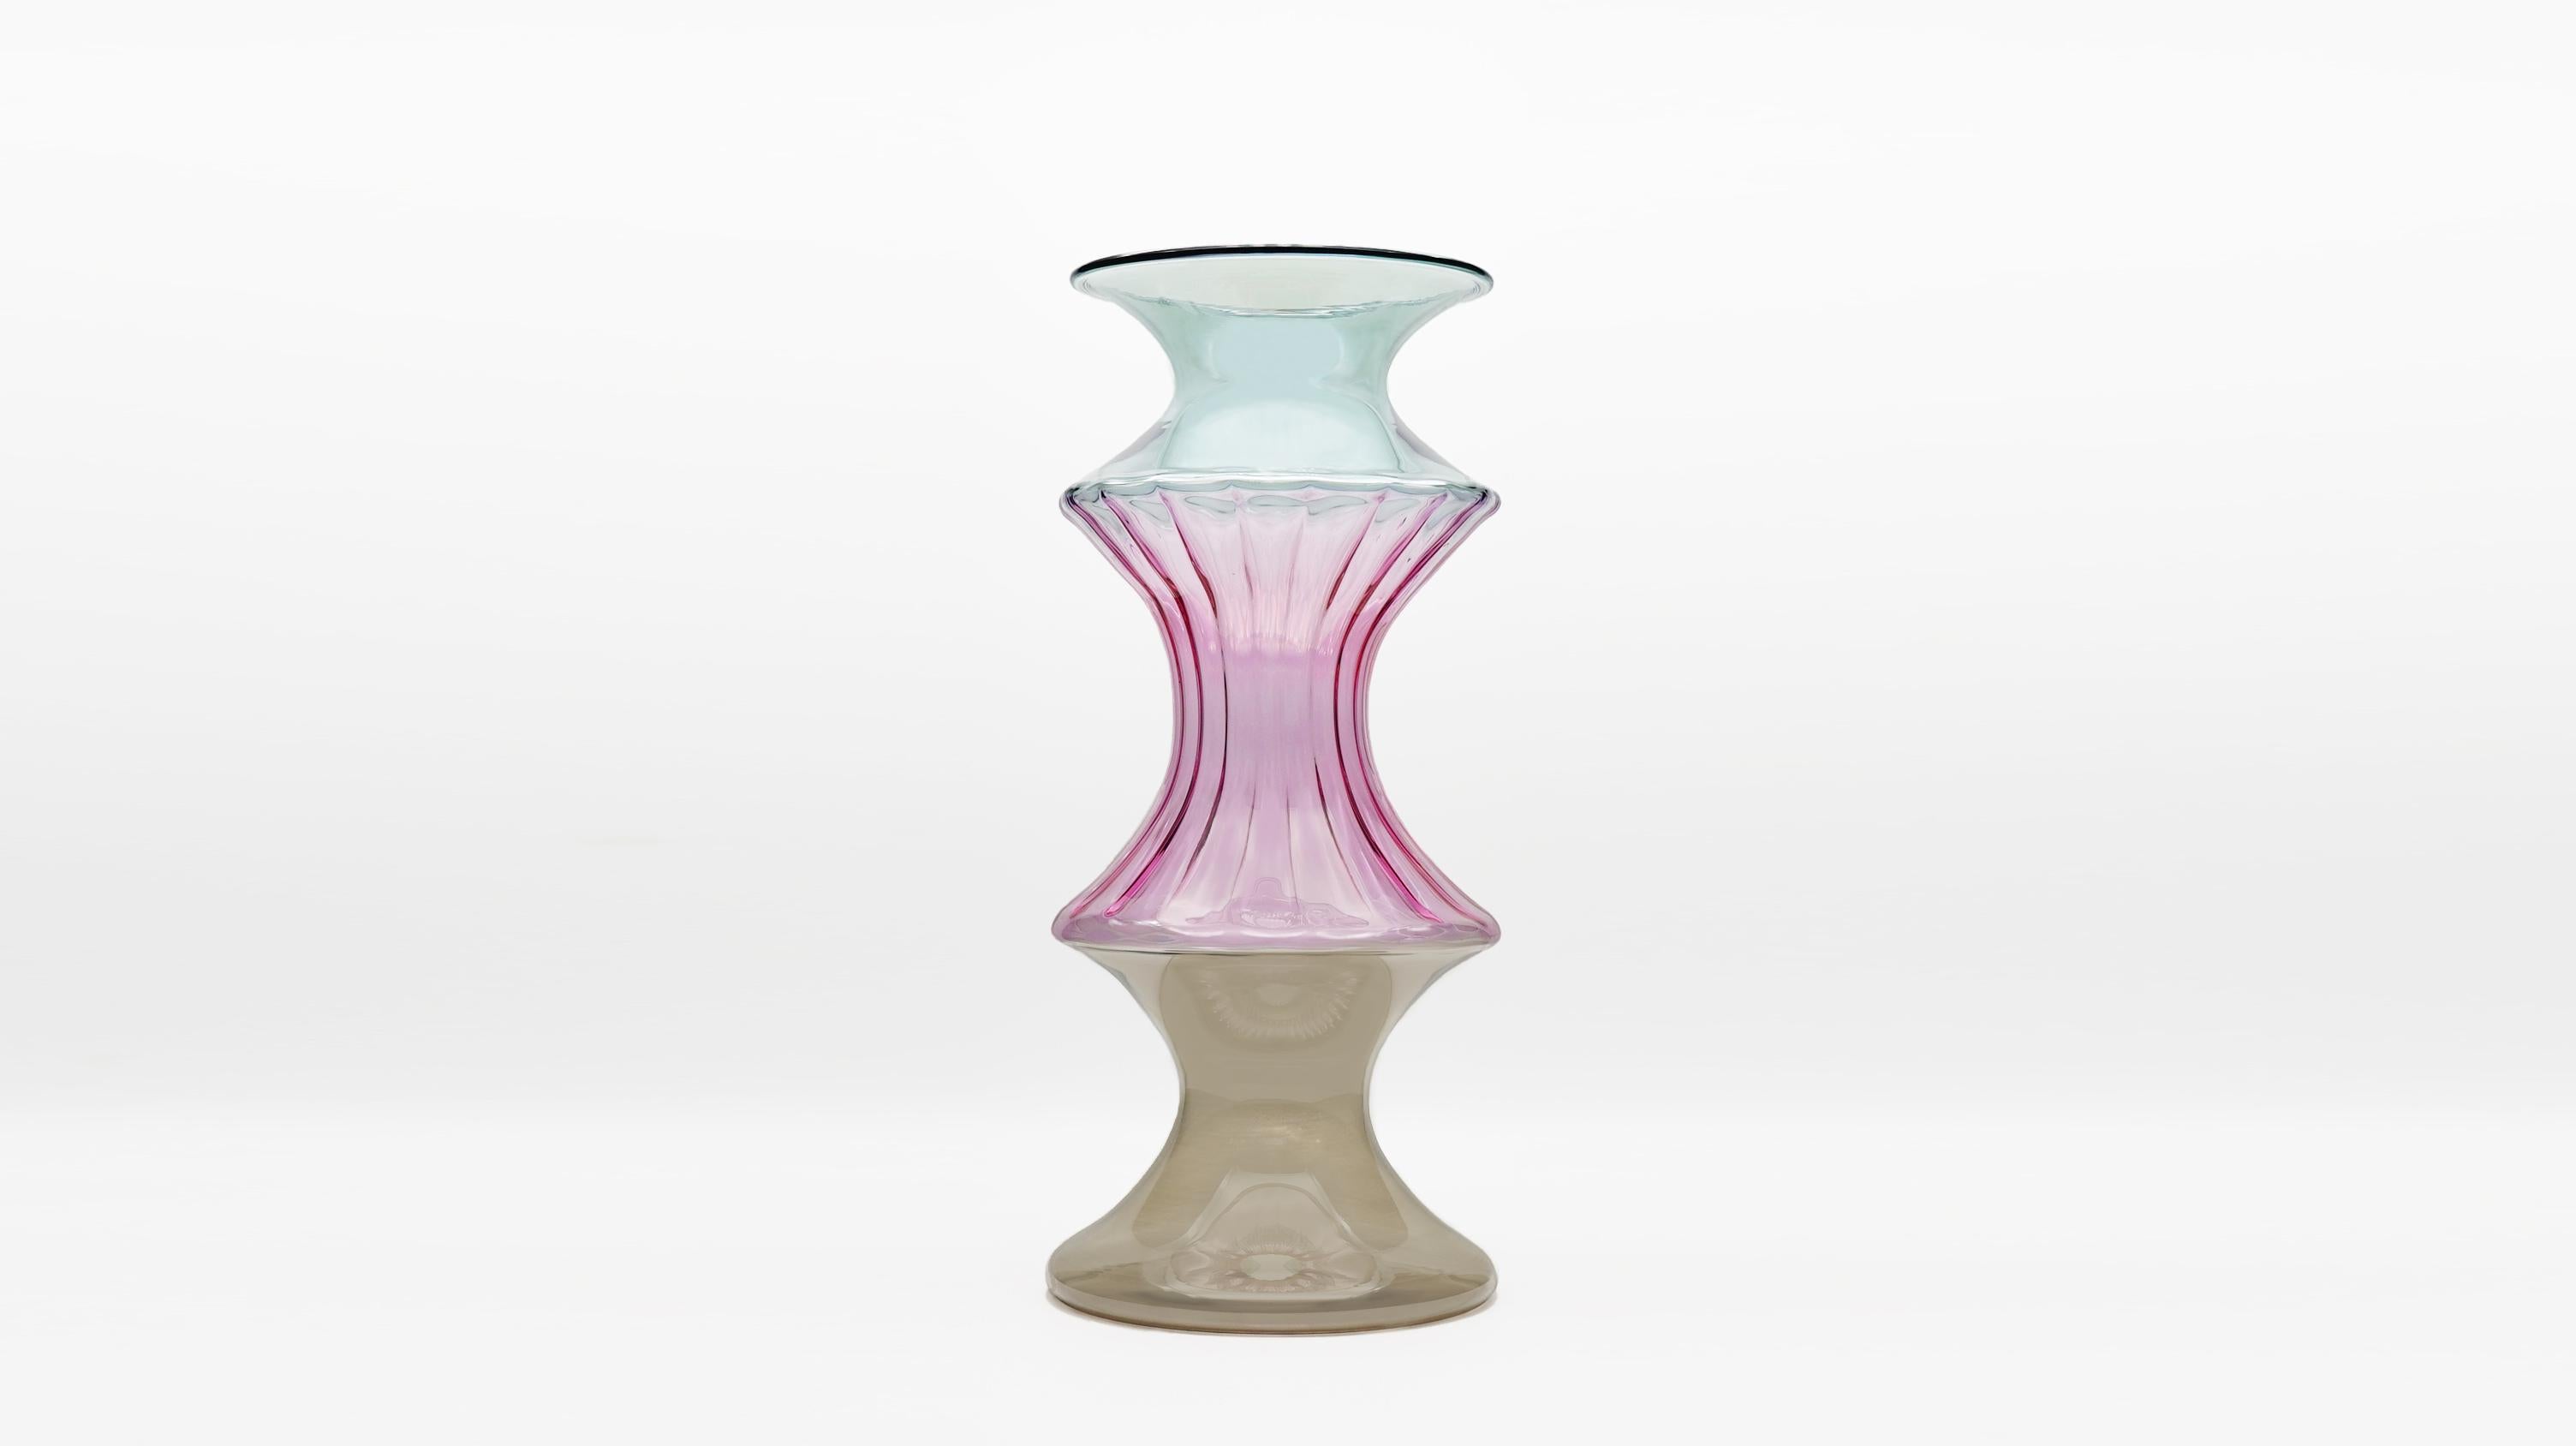 La collection Madame réinterprète les vases vénitiens traditionnels, leurs détails raffinés et leurs couleurs délicates. La forme provient de la décomposition et de la composition de l'évasement typique, qui crée de façon répétée des formes toujours